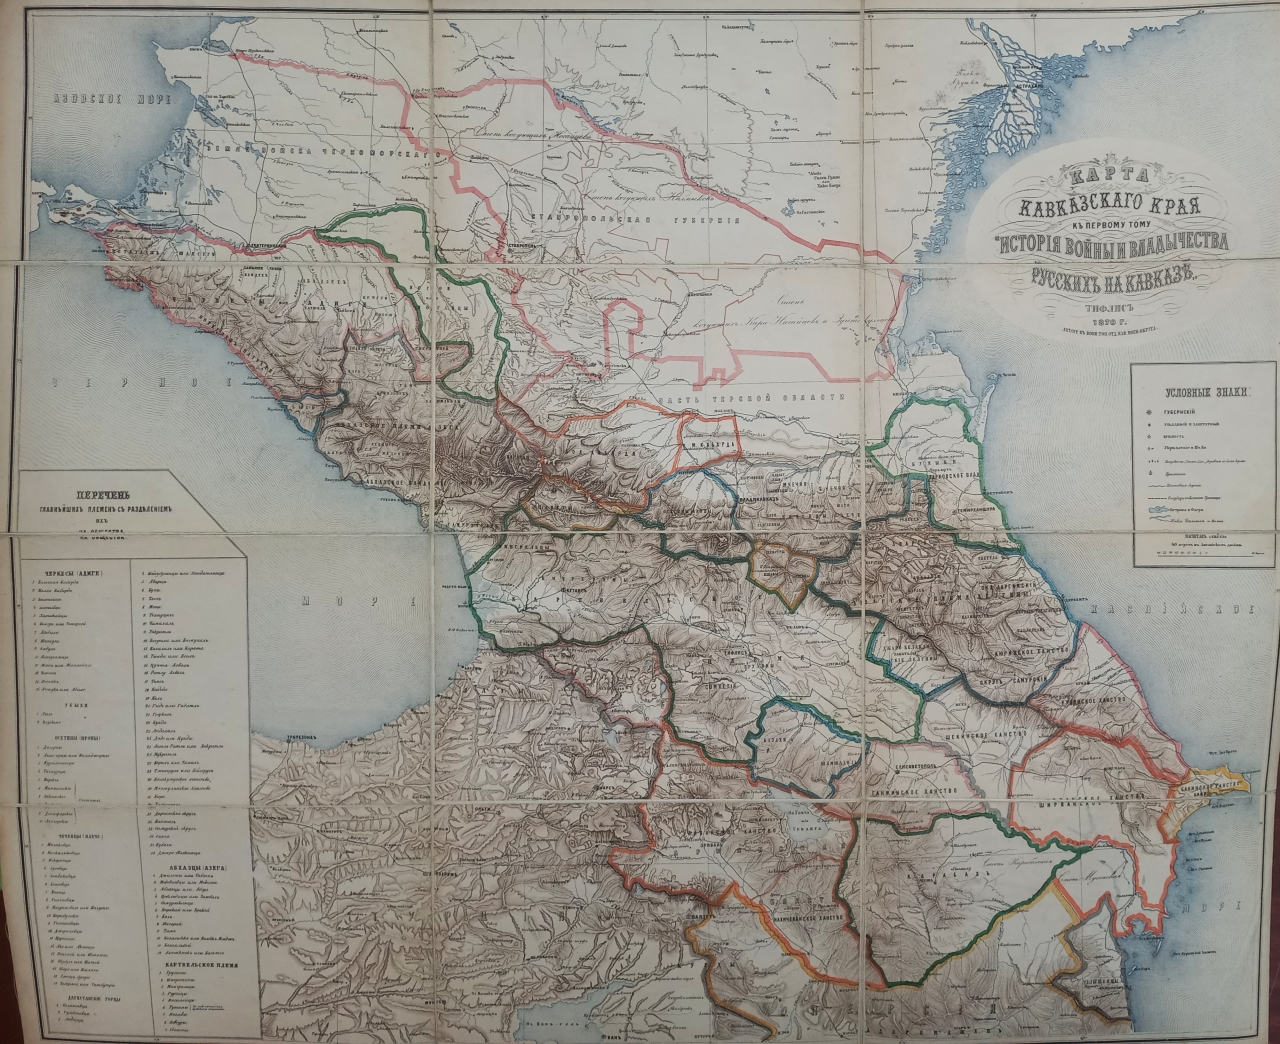 Քարտեզ՝ «Կովկասի երկրամասը 19-րդ դարի առաջին կեսին»